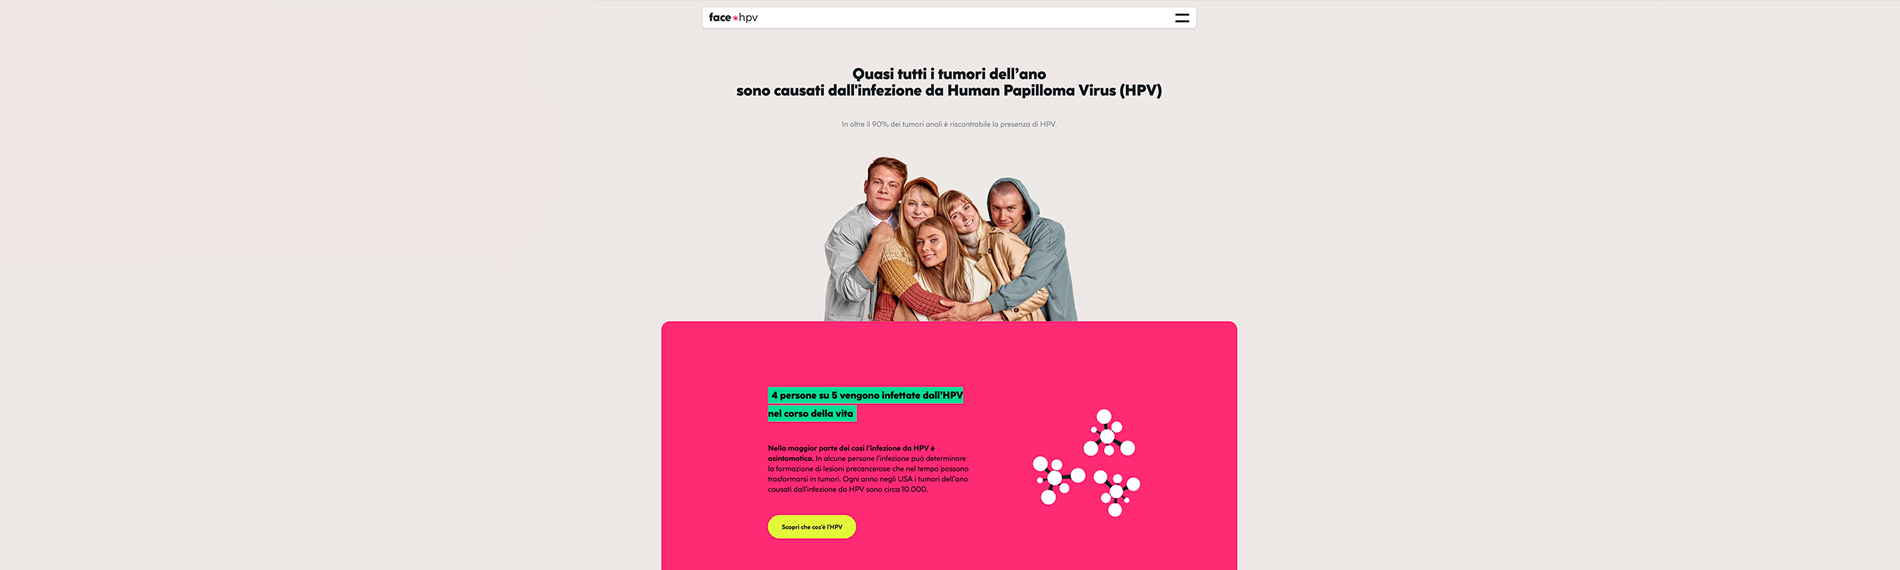 Lancio nuovo sito Fight HPV